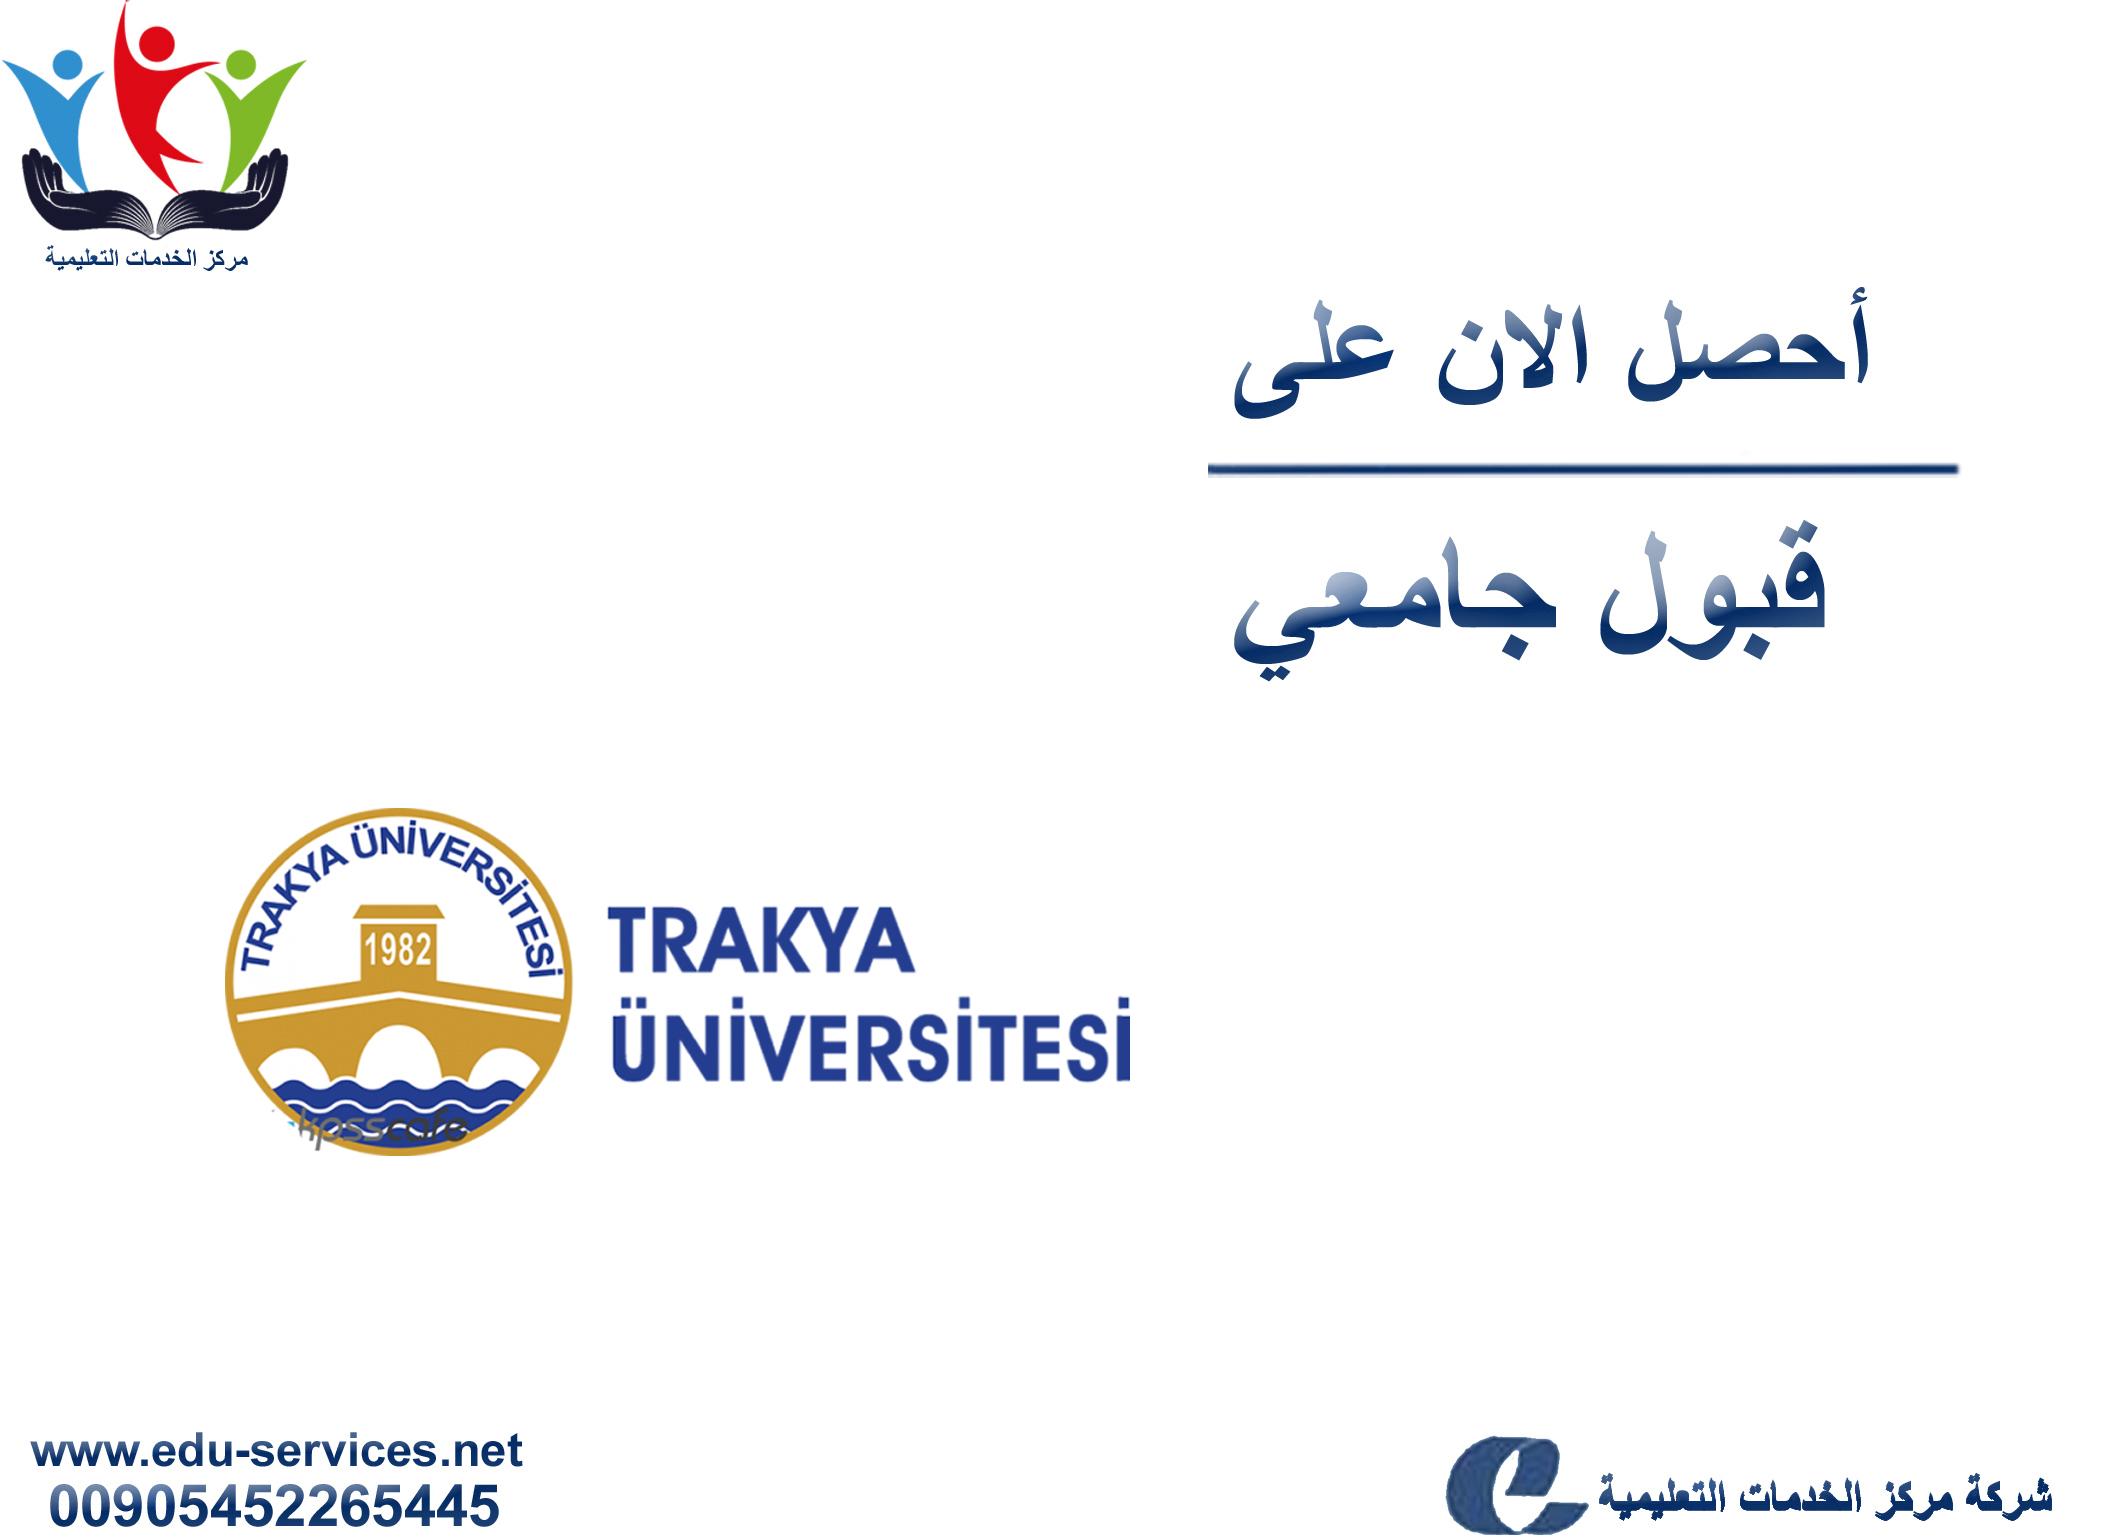 افتتاح التسجيل على جامعة تراكيا لبرنامج الدراسات العليا للعام 2019-2020